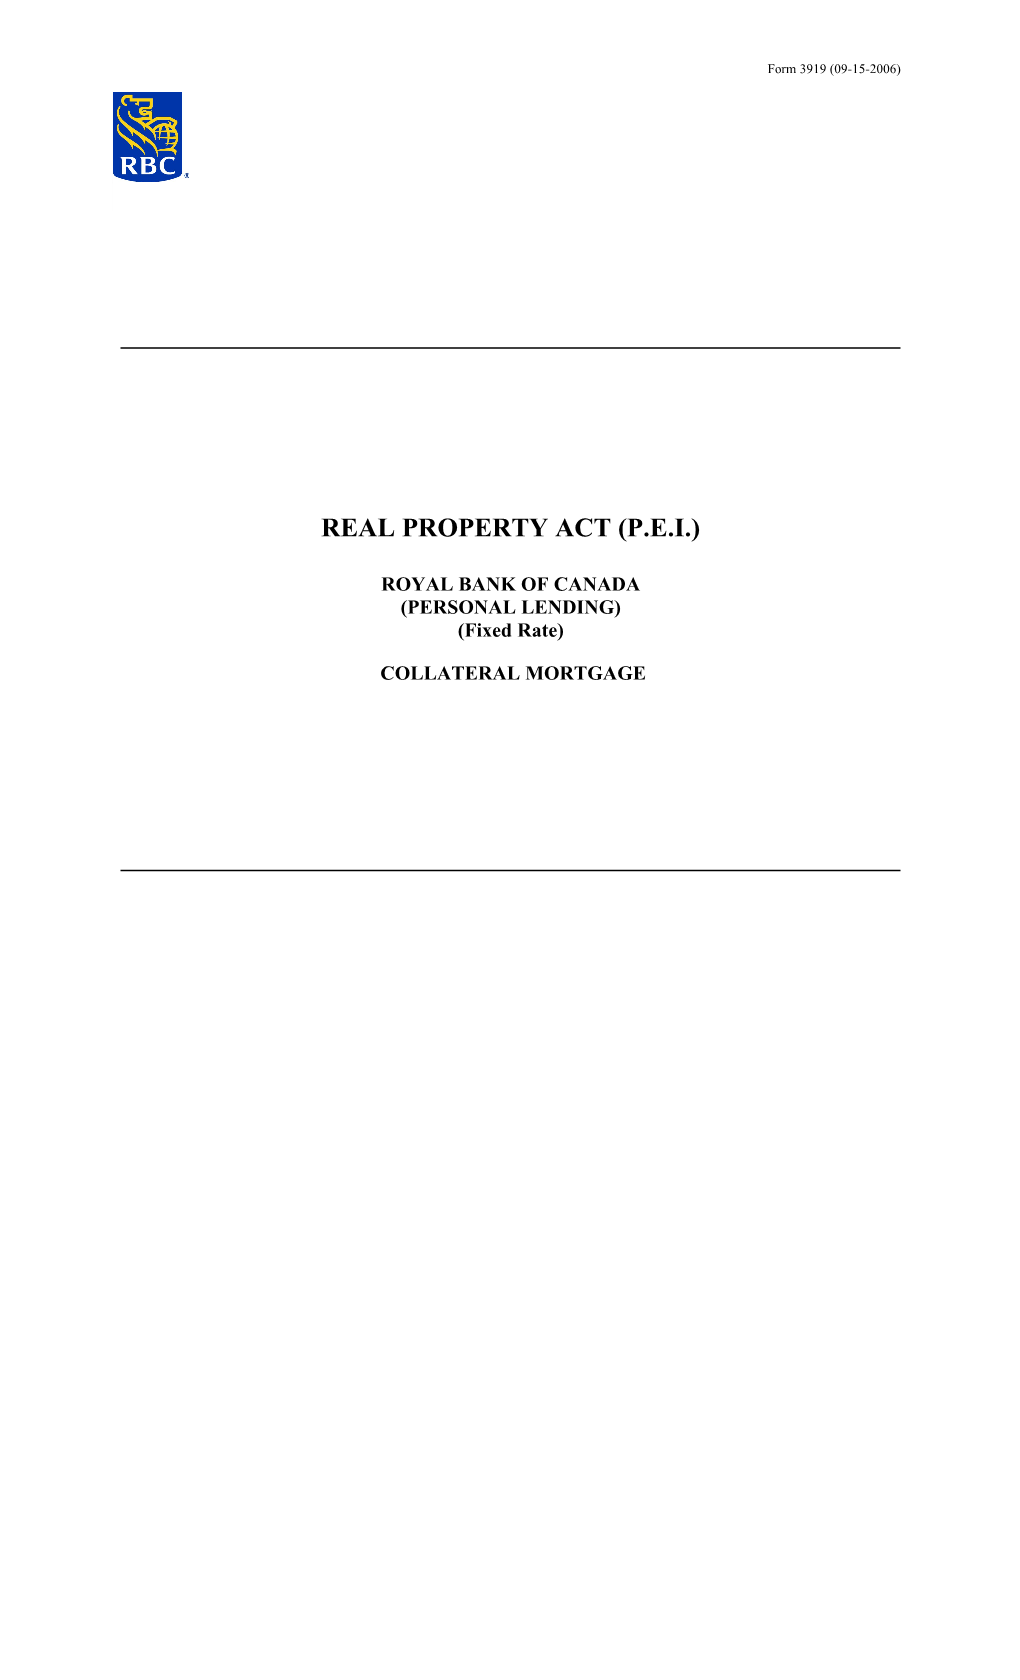 Real Property Act (P.E.I.)